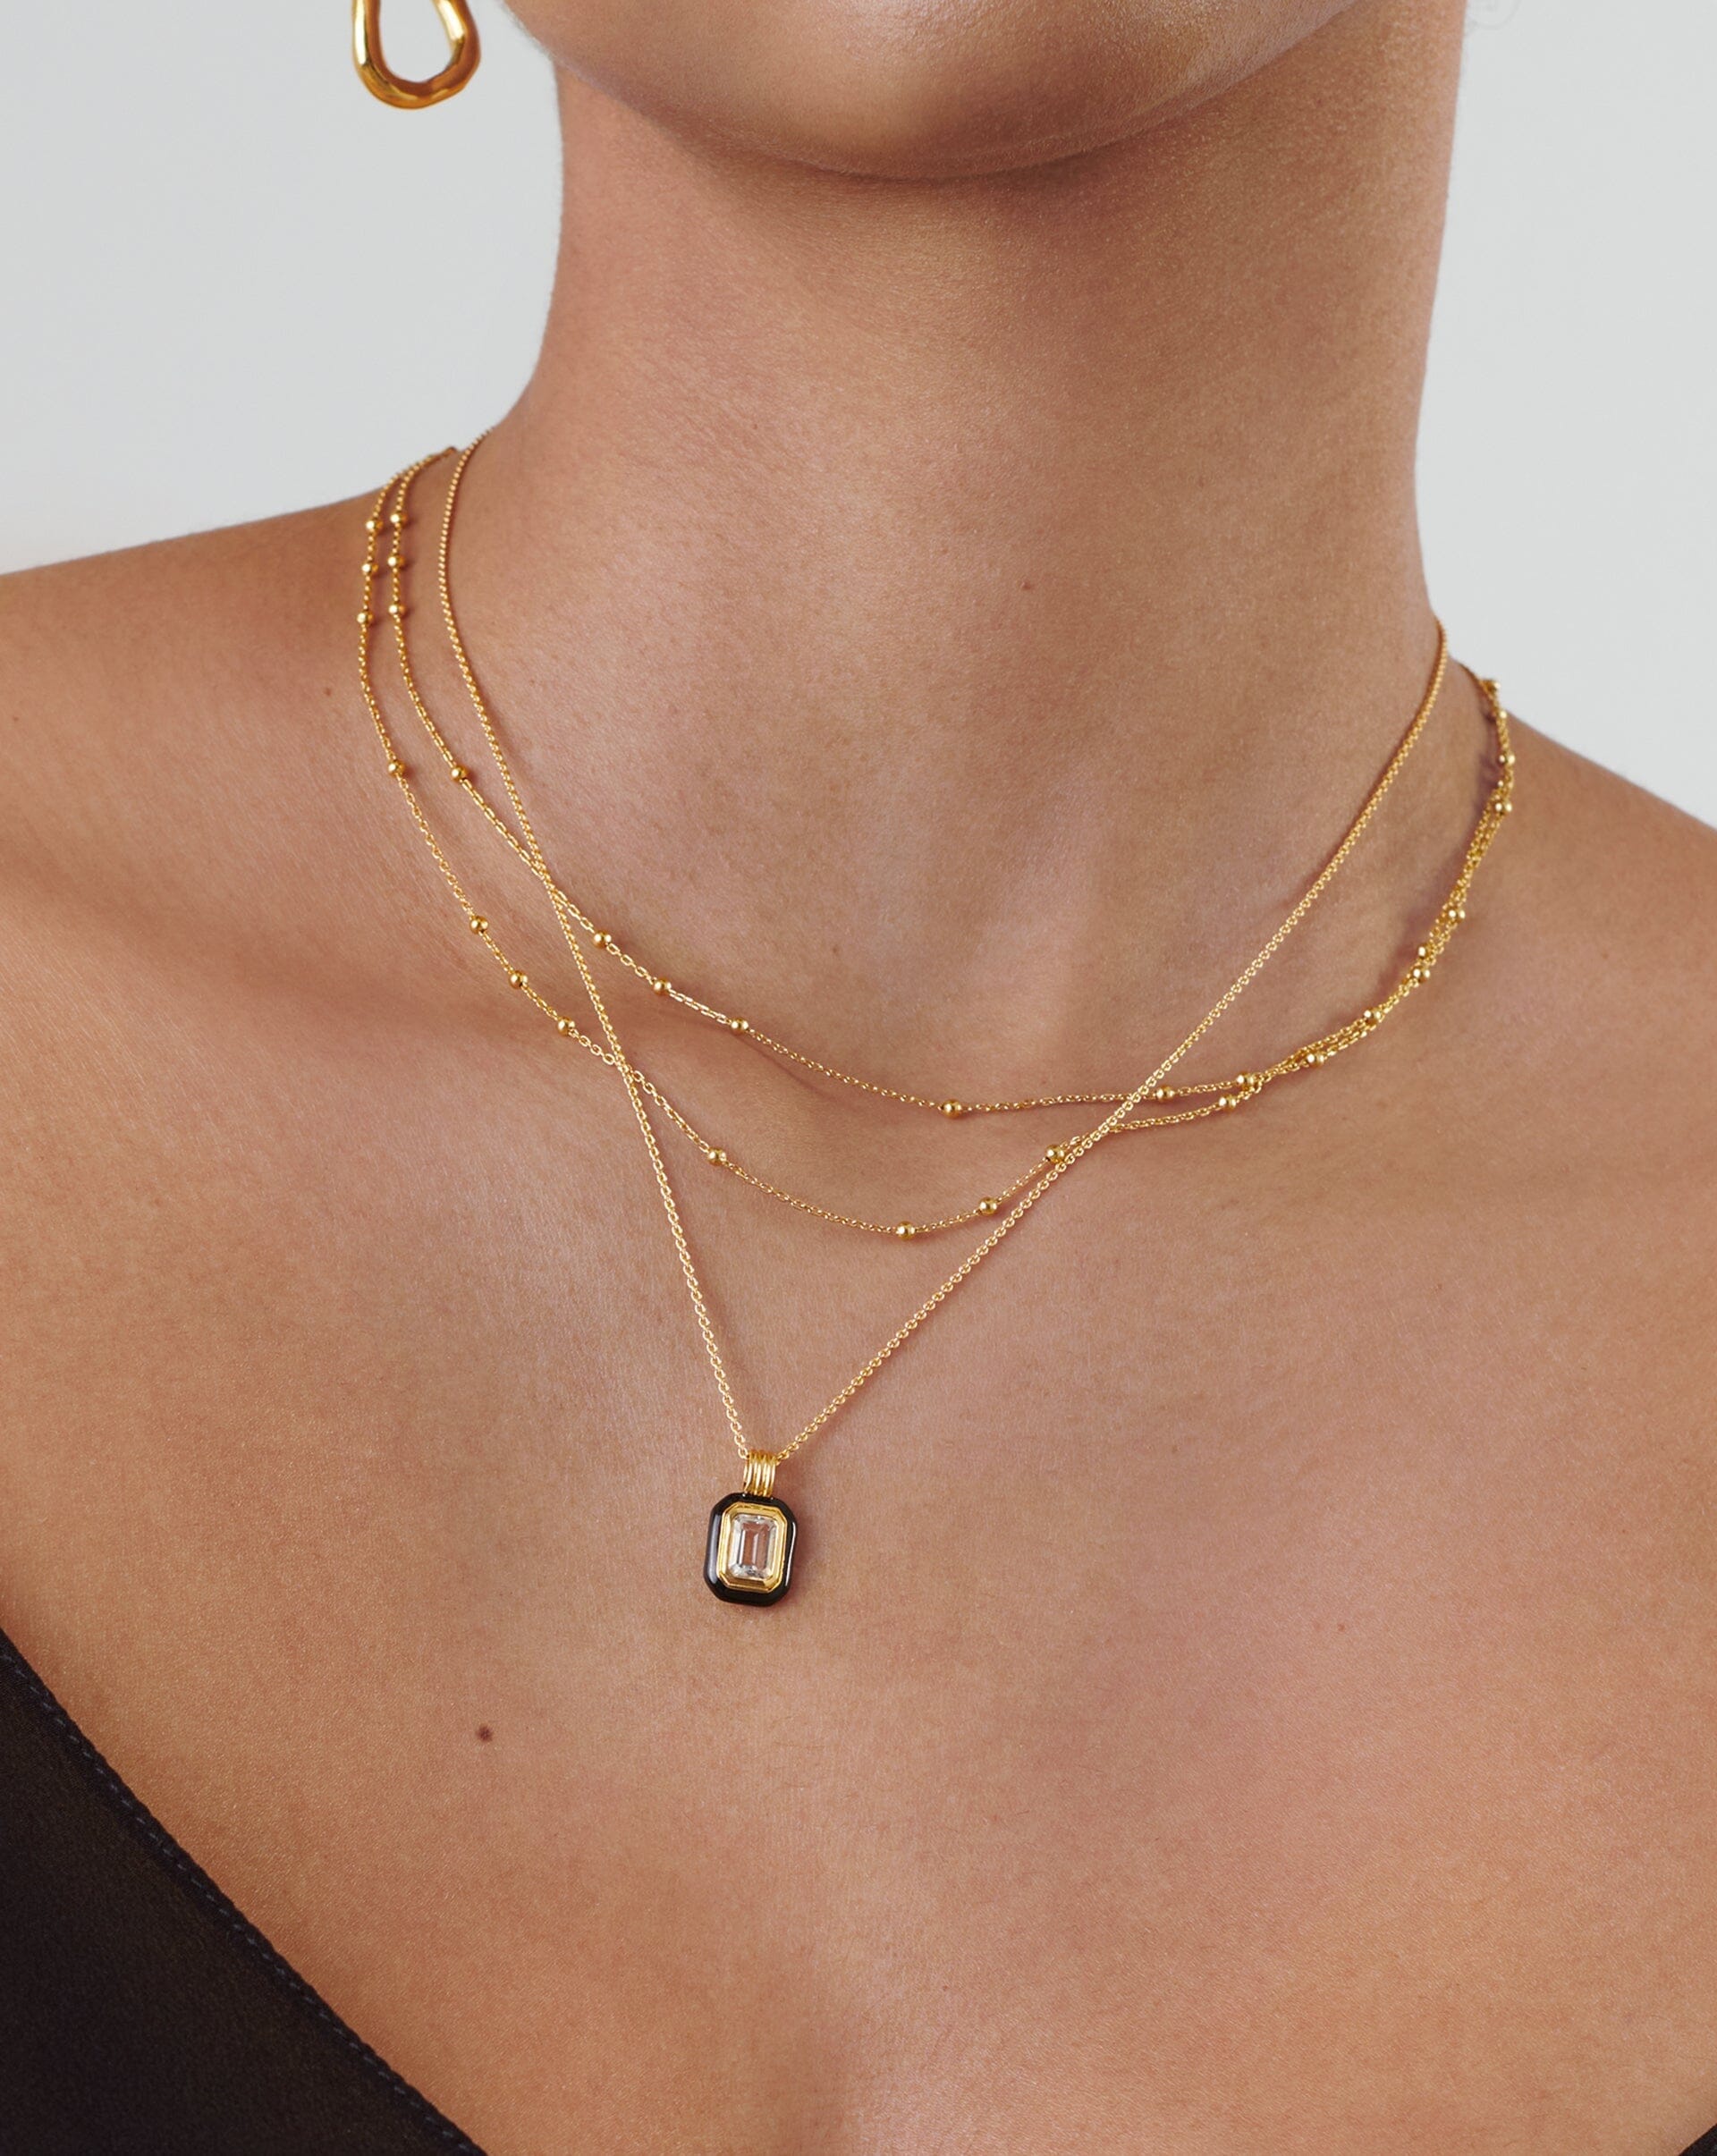 Enamel & Stone Pendant Necklace | 18ct Gold Plated Vermeil/Blue Cubic Zirconia Necklaces Missoma 